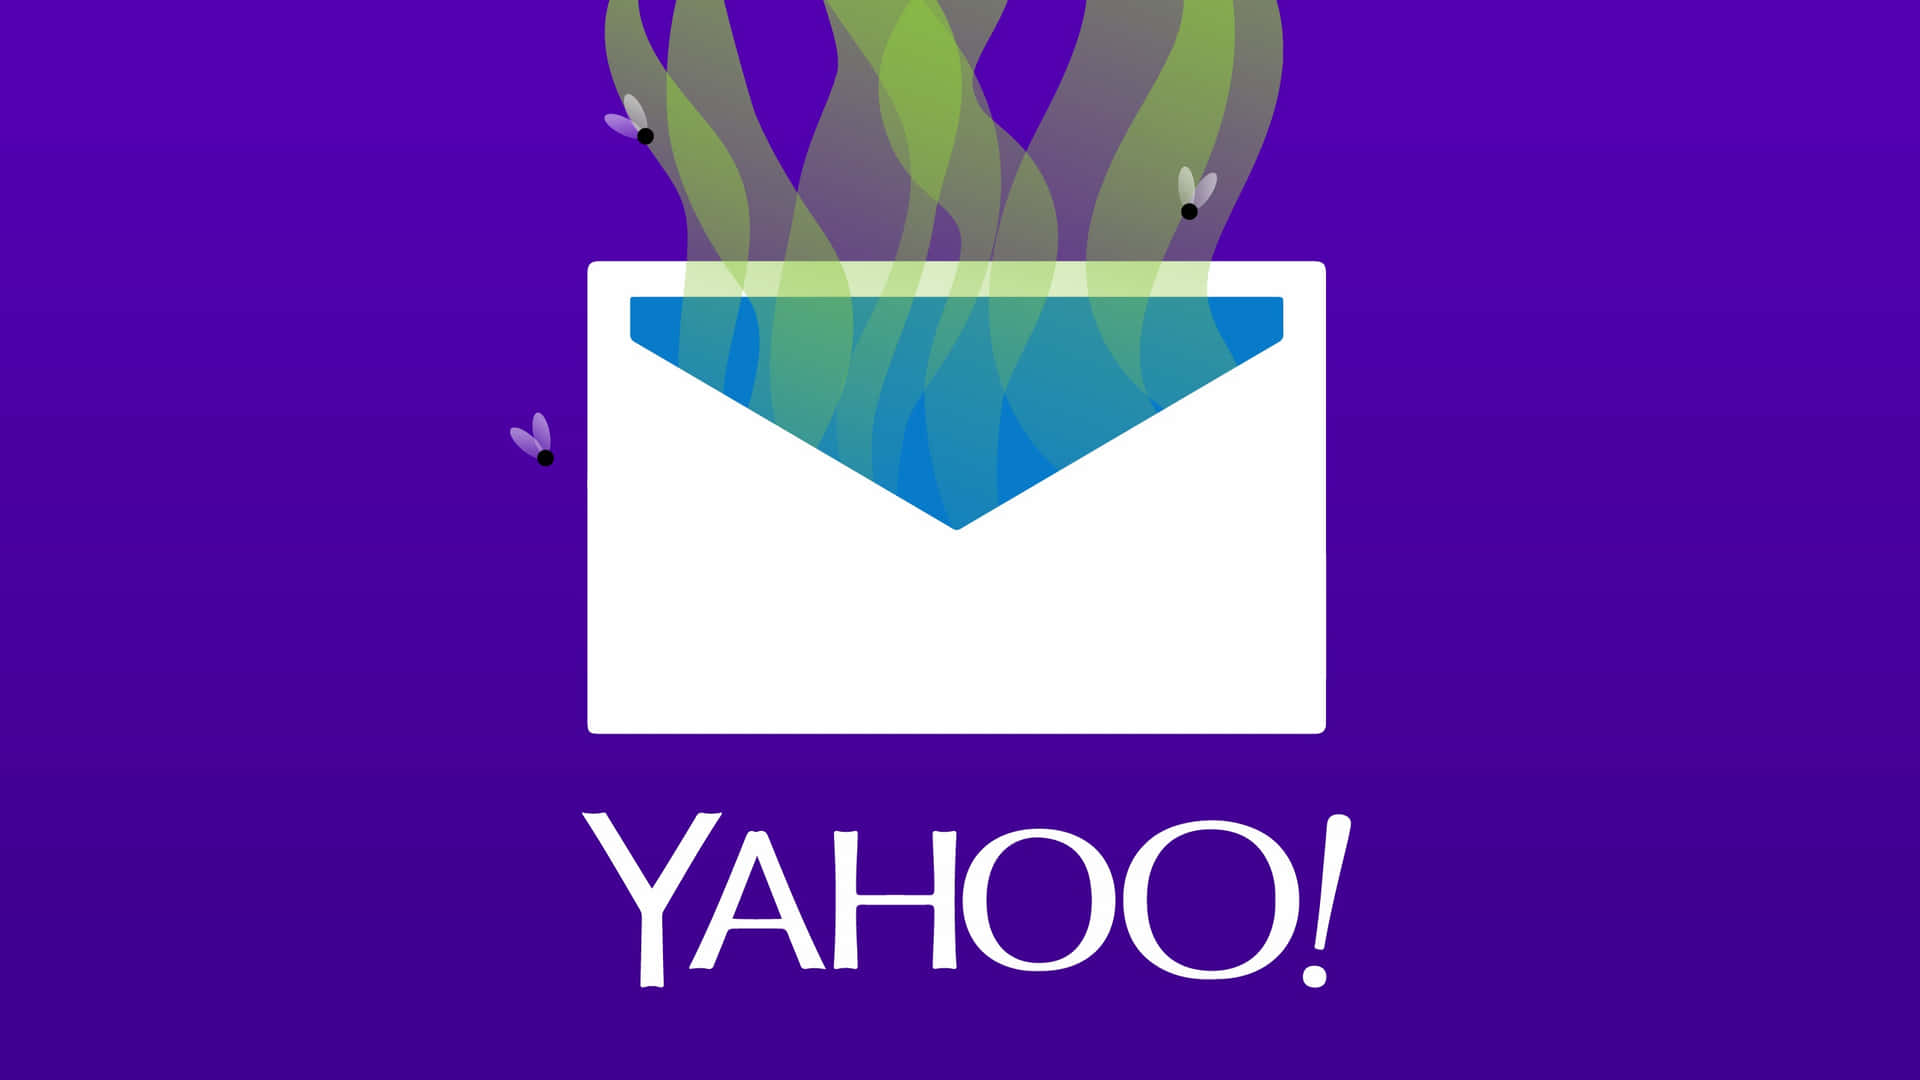 Erlebensie Ununterbrochene Suche Mit Yahoo.